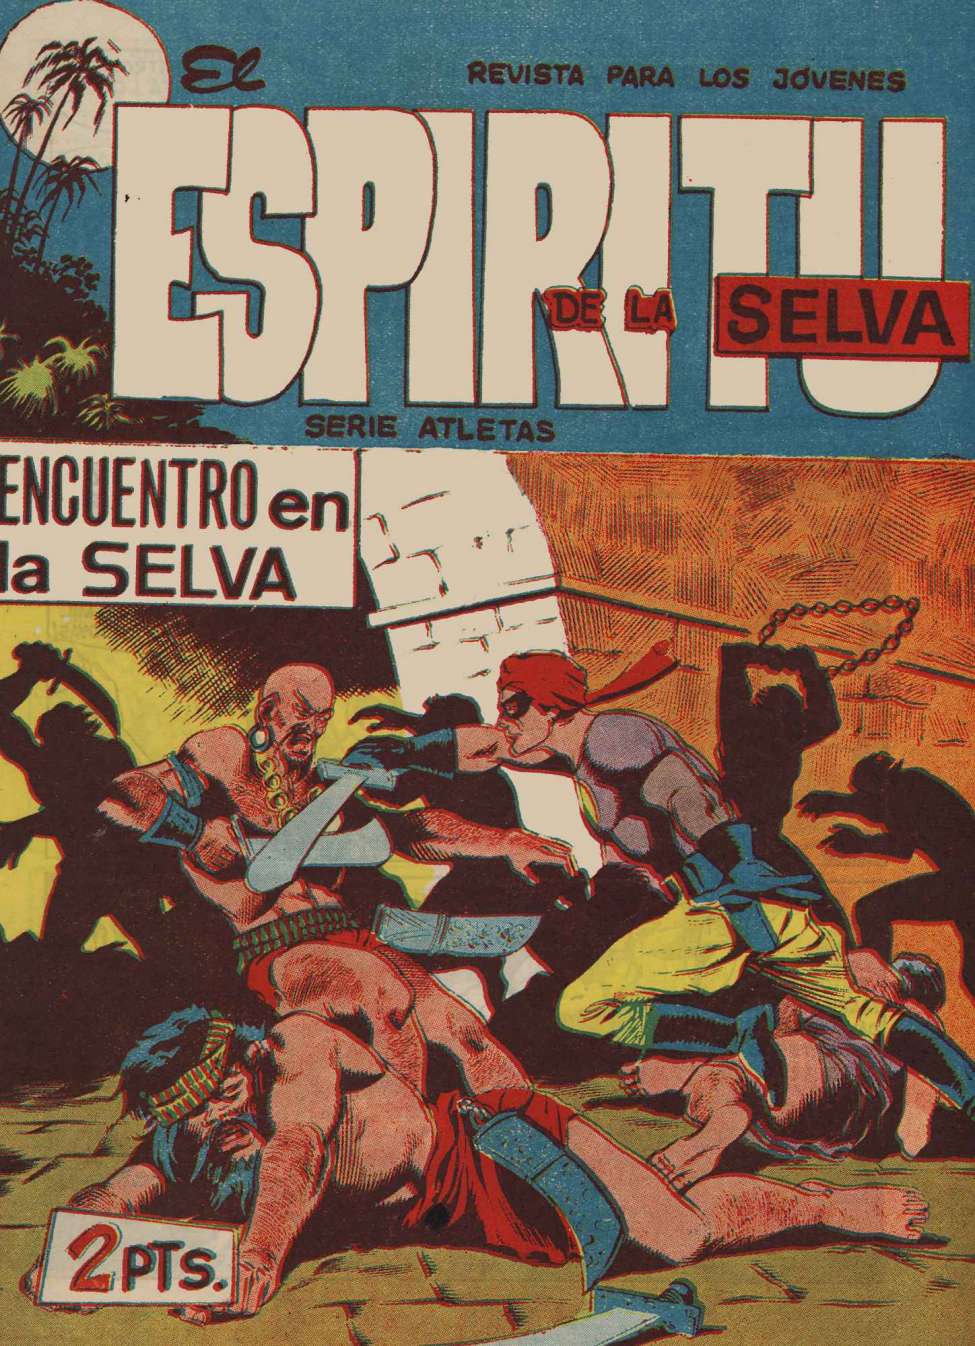 Comic Book Cover For El Espiritu De La Selva 74 - Encuentro en La Selva